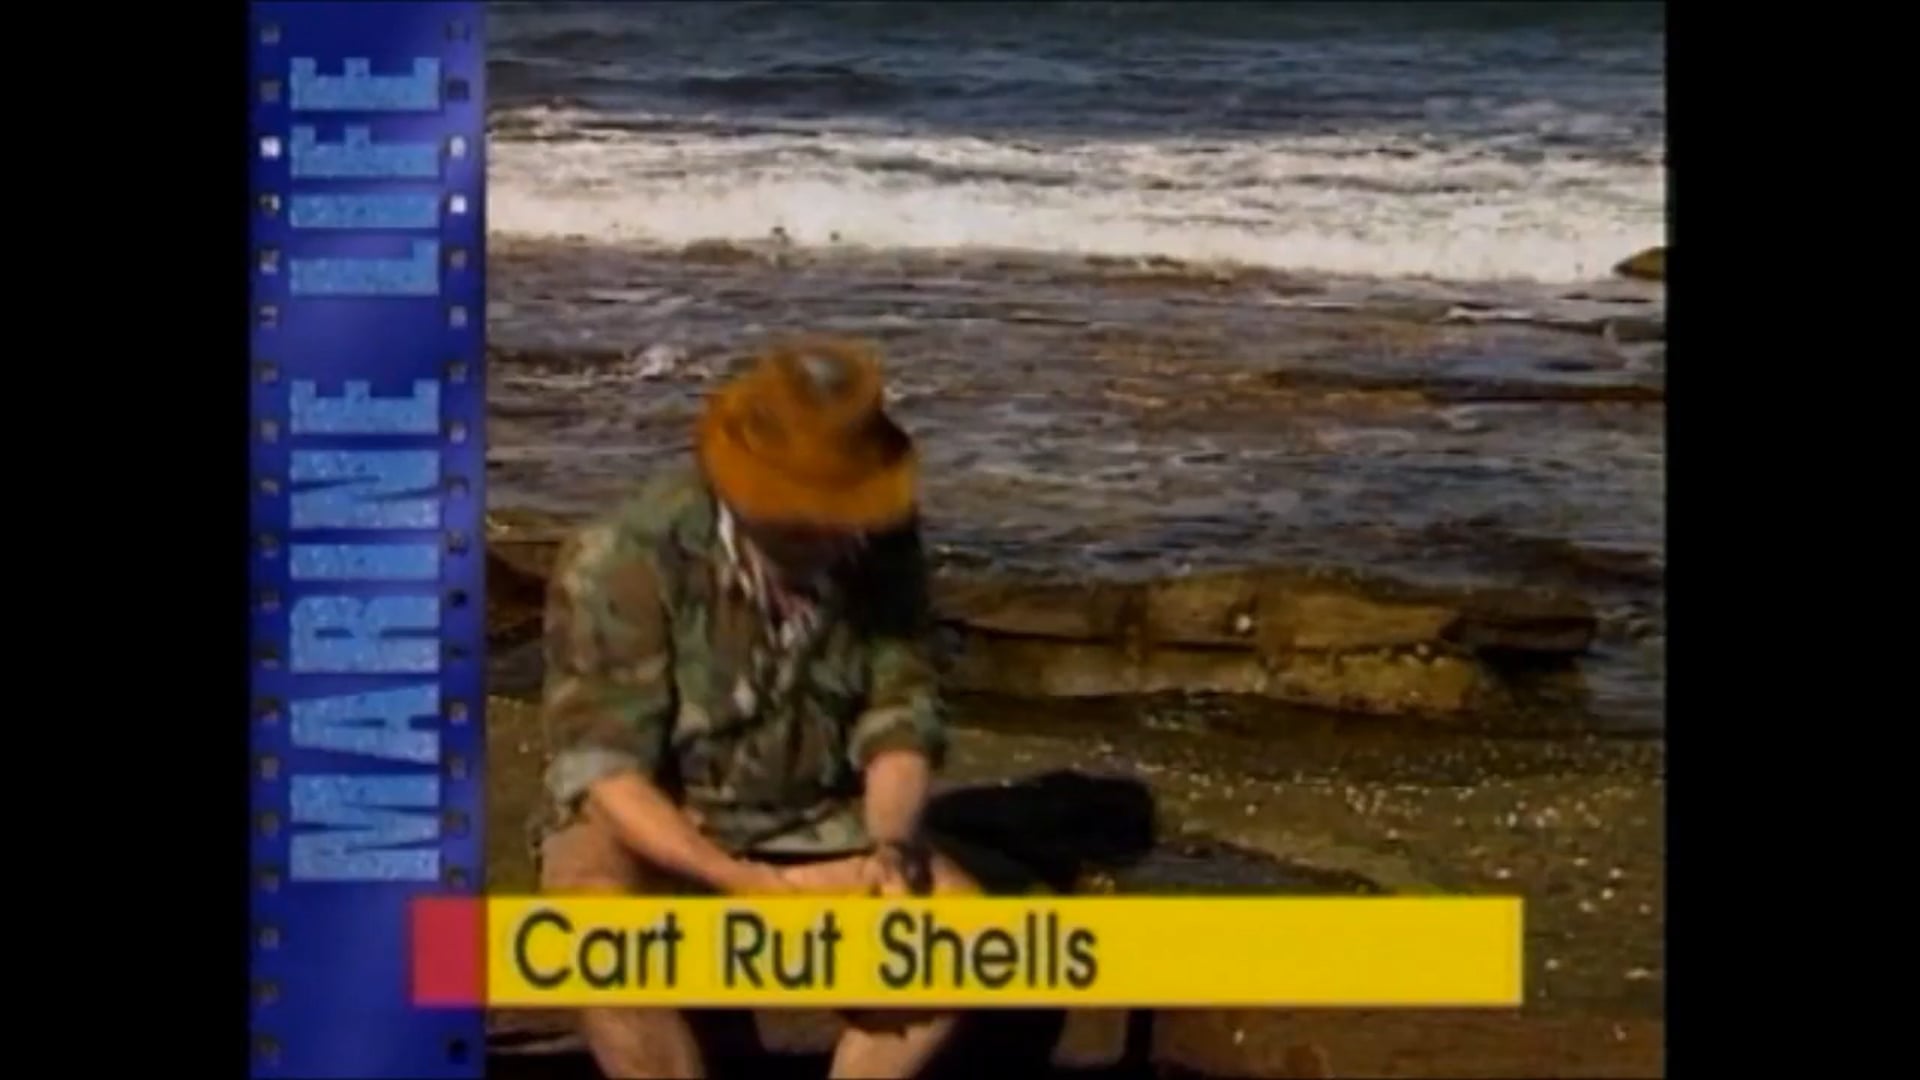 Cart Rut Shells